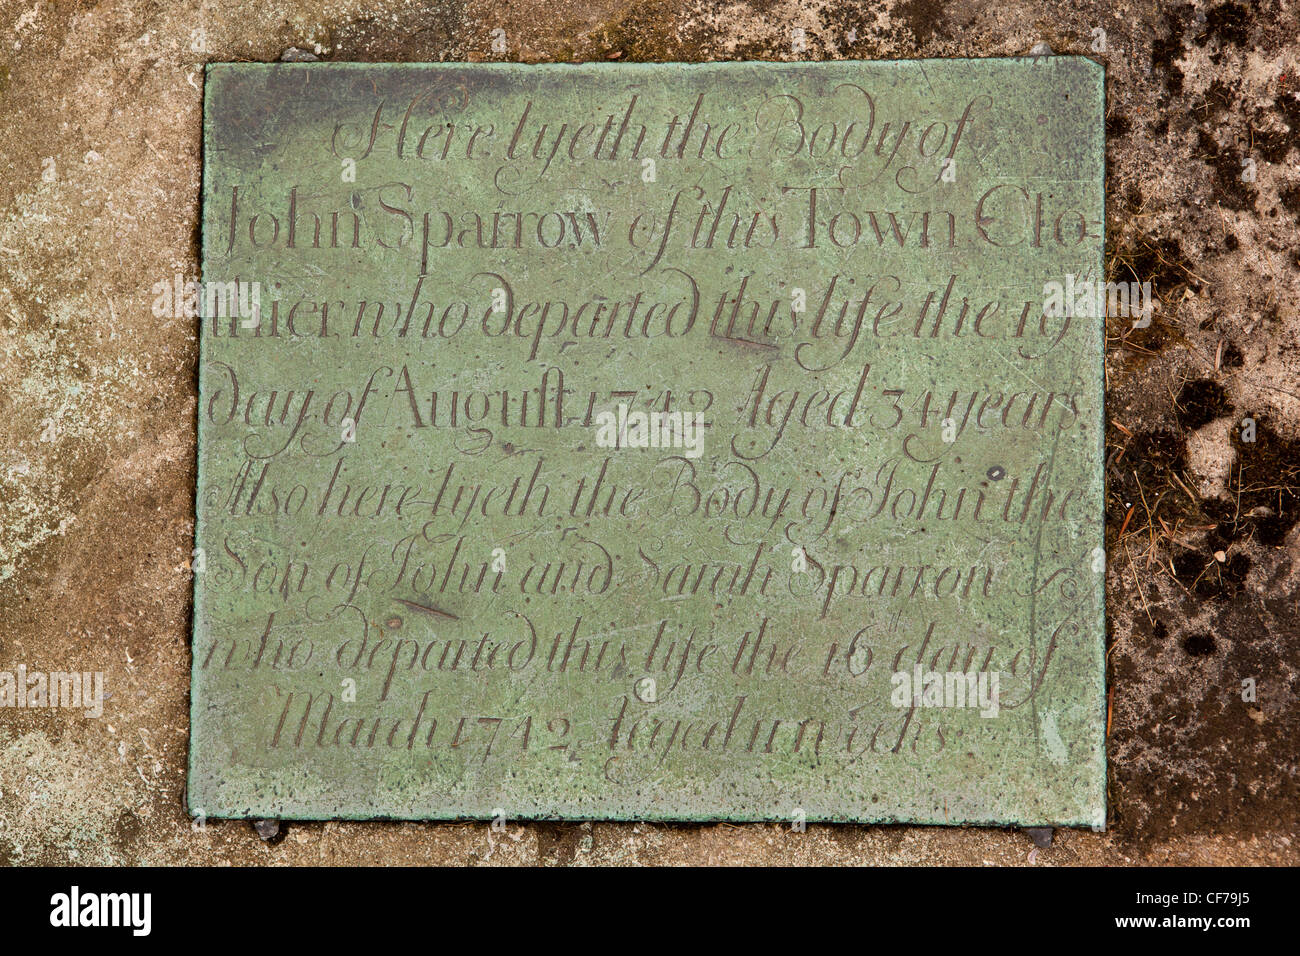 Regno Unito, Gloucestershire, Stroud, Painswick, St Mary sagrato, John Sparrow Clothier's 1742 tomba di ottone targhetta del nome Foto Stock